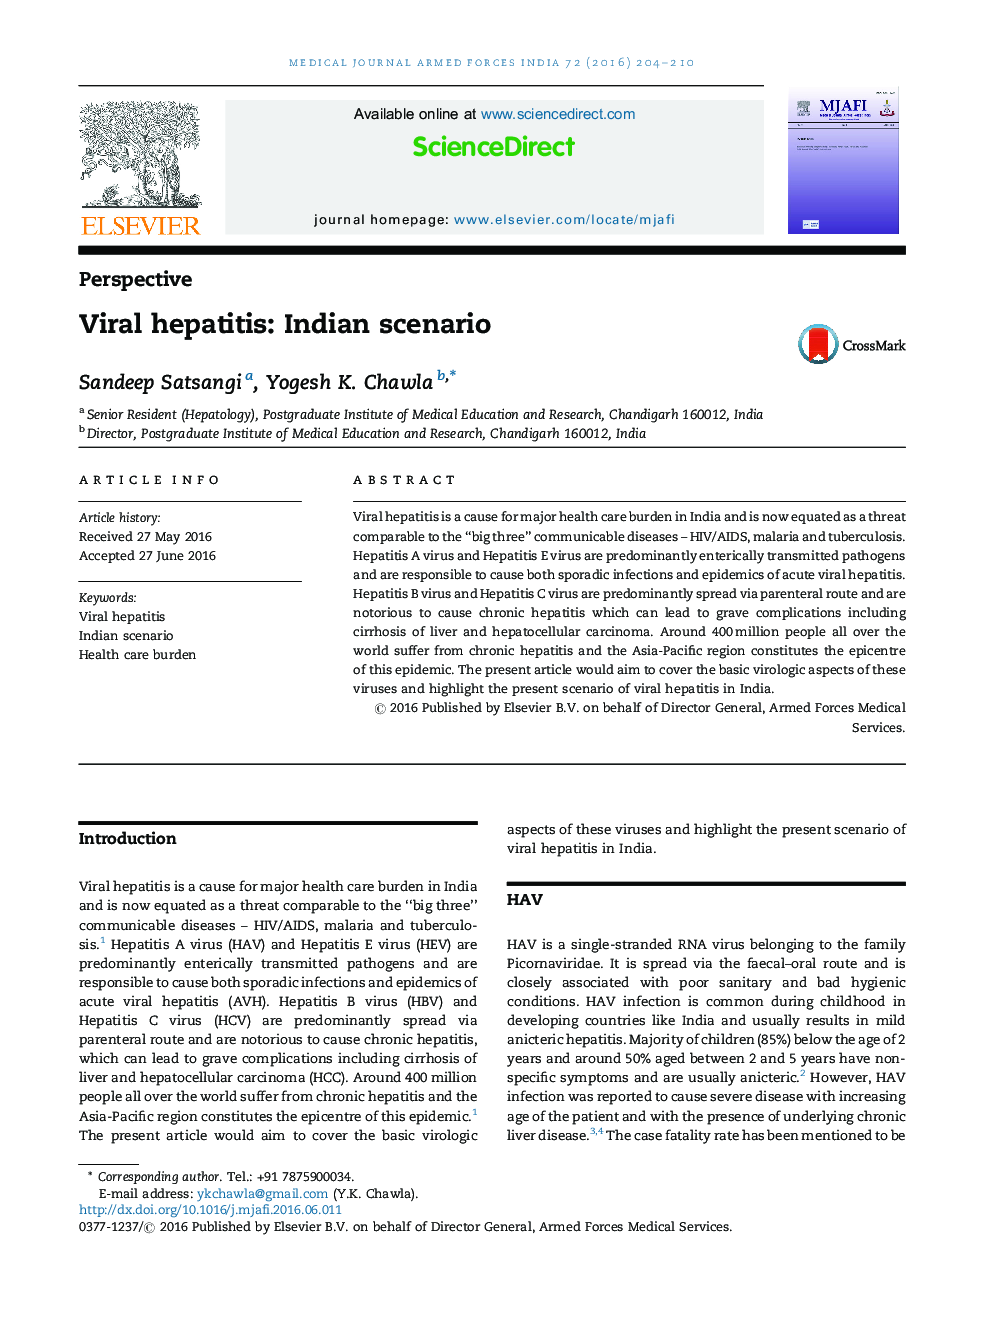 هپاتیت ویروسی: سناریوی هند